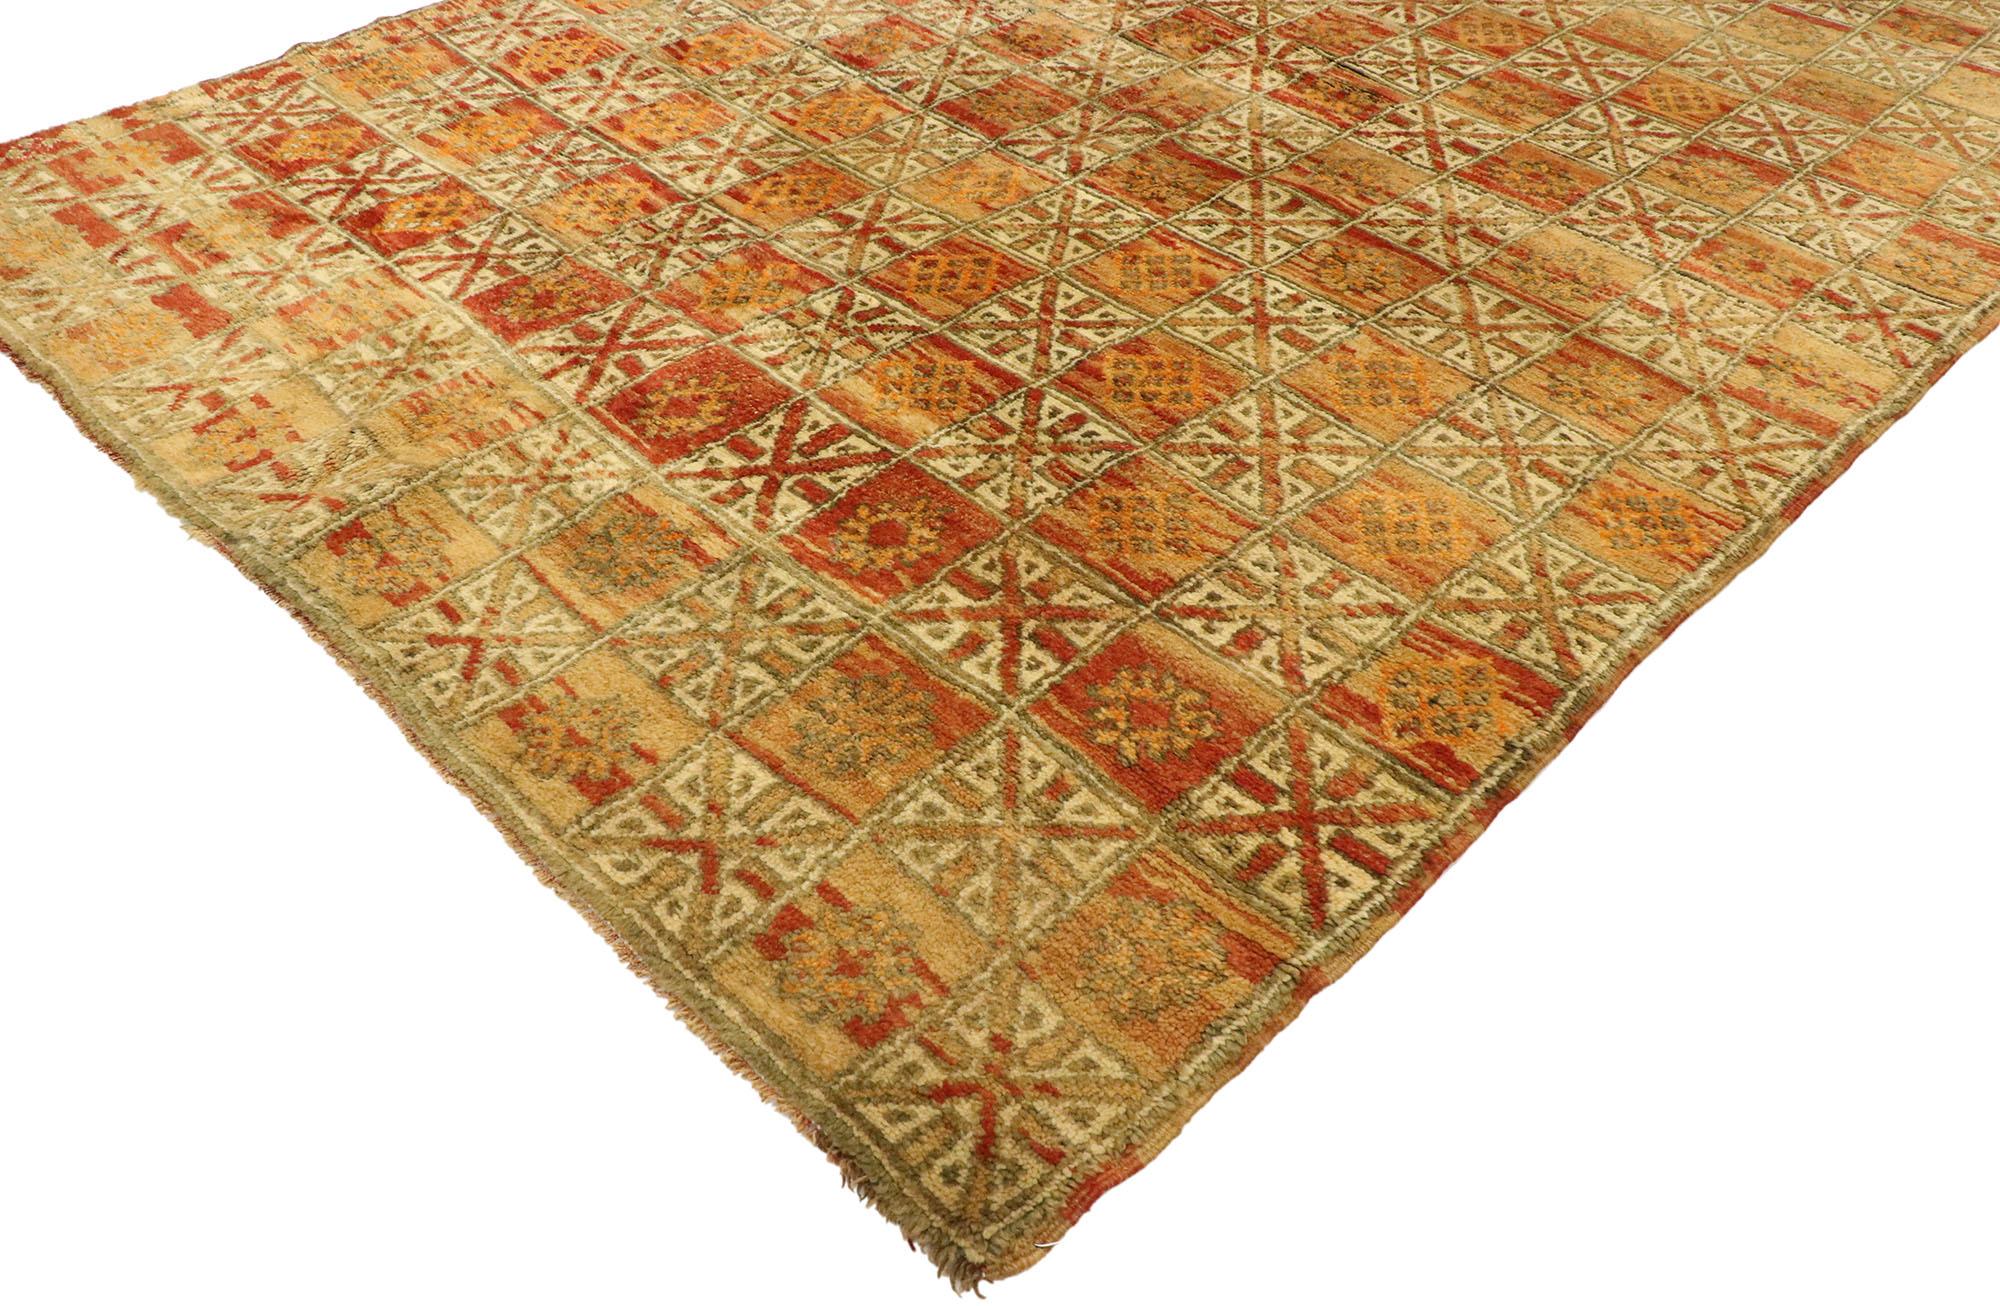 20751 Vintage Beni MGuild Marokkanischer Teppich Läufer, 05'04 x 12'10. Die Beni M'Guild Rugs, die vom Stamm der Beni M'Guild im Mittleren Atlasgebirge in Marokko stammen, verkörpern eine verehrte Tradition, die tief in das Gewebe der Berberkultur